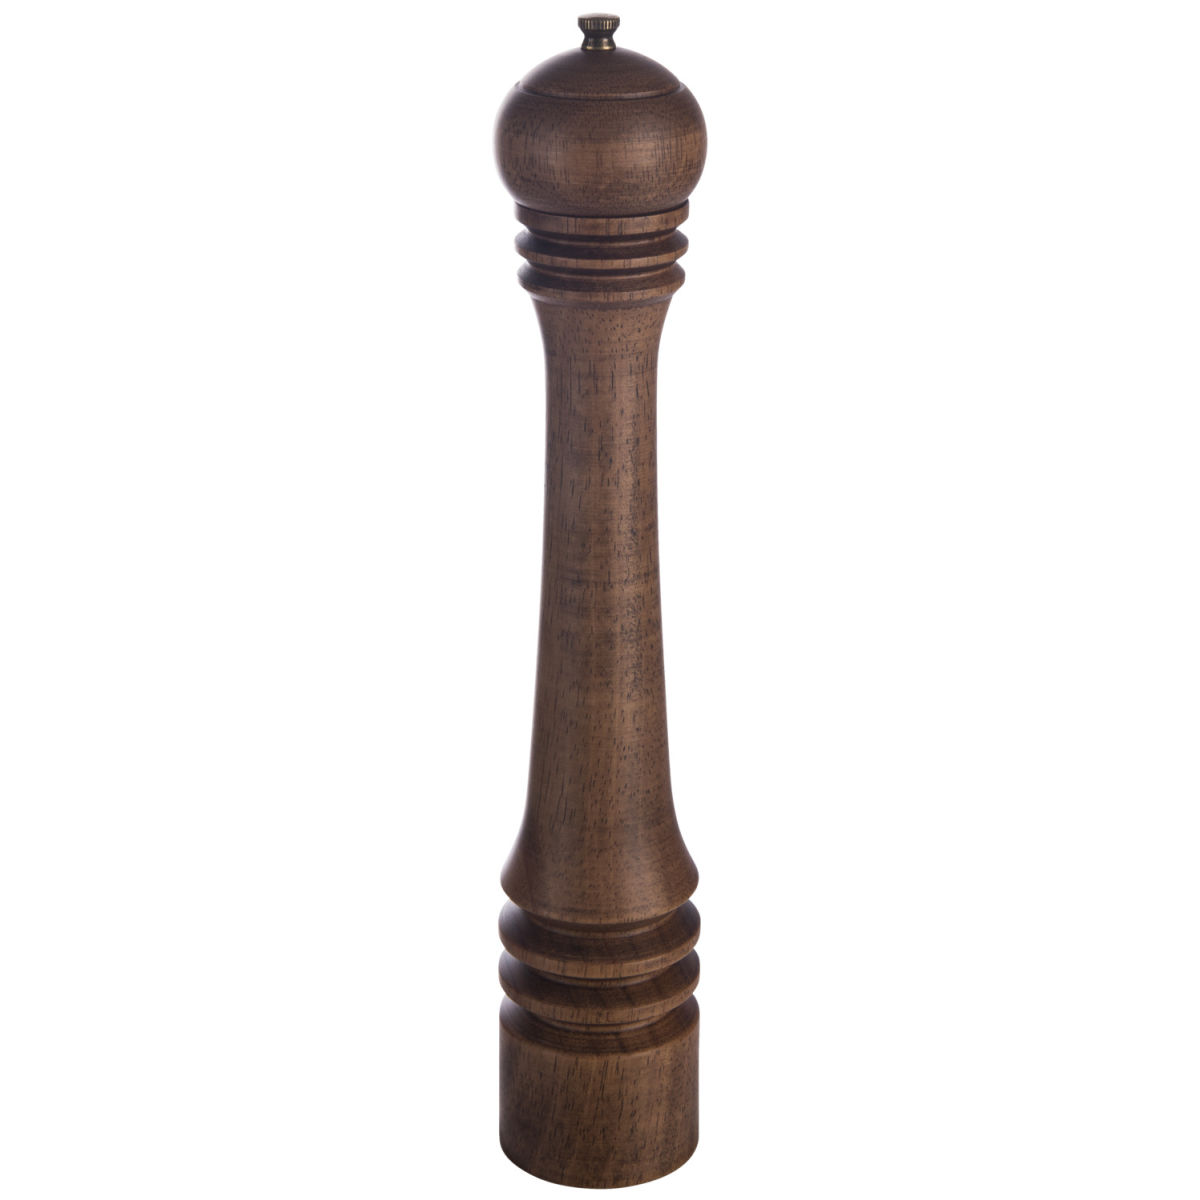 Vega Zoutmolen Leko hout; 7x39.9 cm (ØxH); donkerbruin